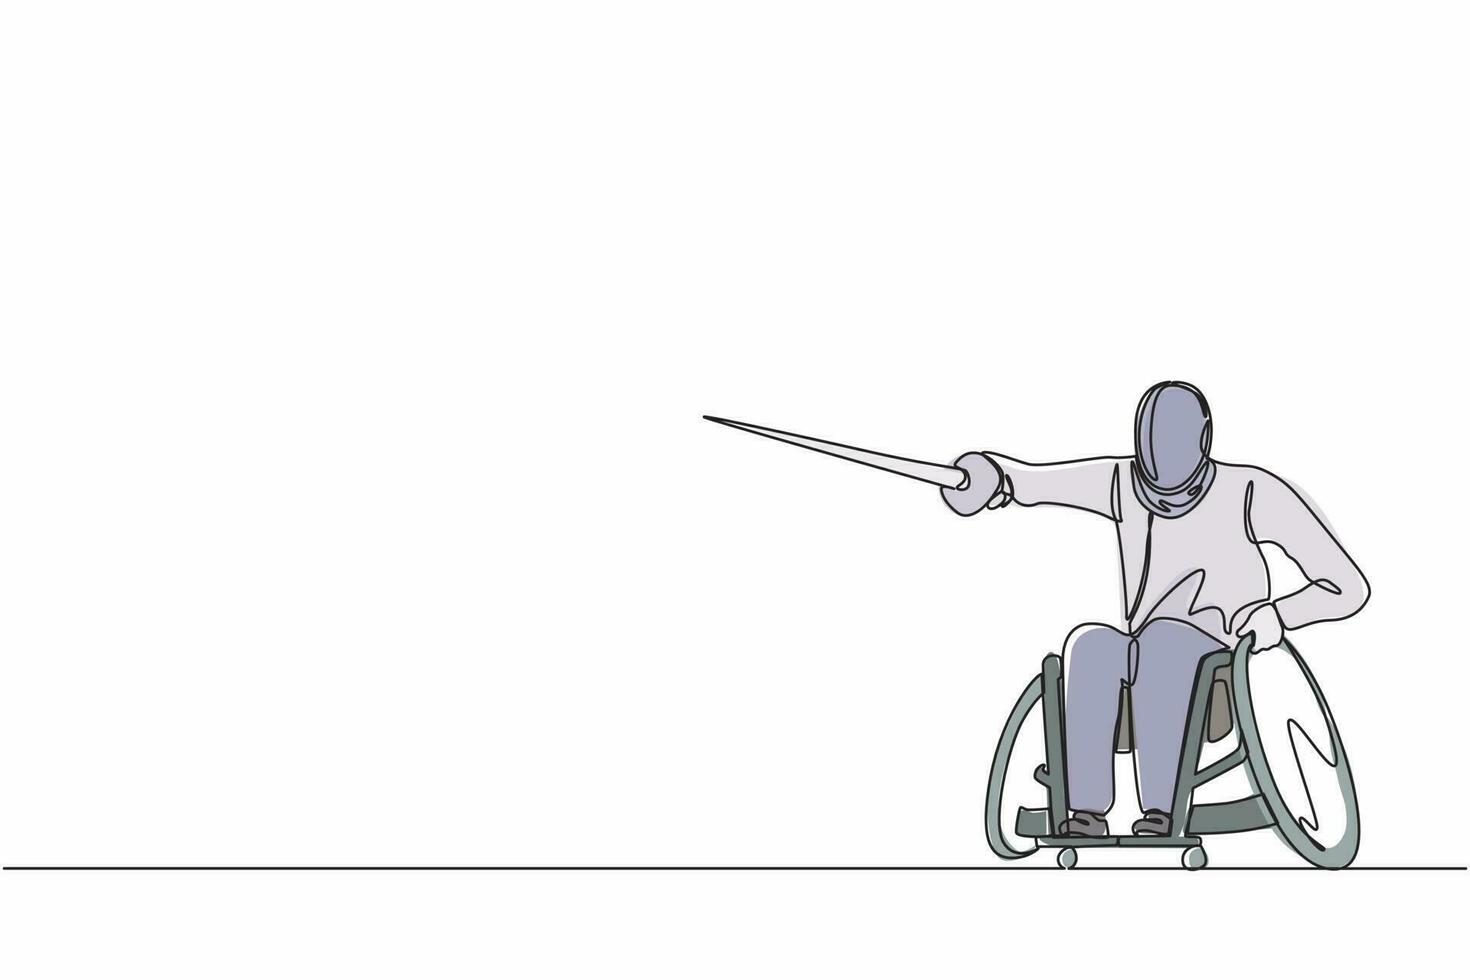 dibujo de una sola línea continua joven de esgrima discapacitado en silla de ruedas. espadachín discapacitado con estoque. concepto de deporte, juegos de verano, recuperación, esgrima. vector de diseño gráfico de dibujo de una línea